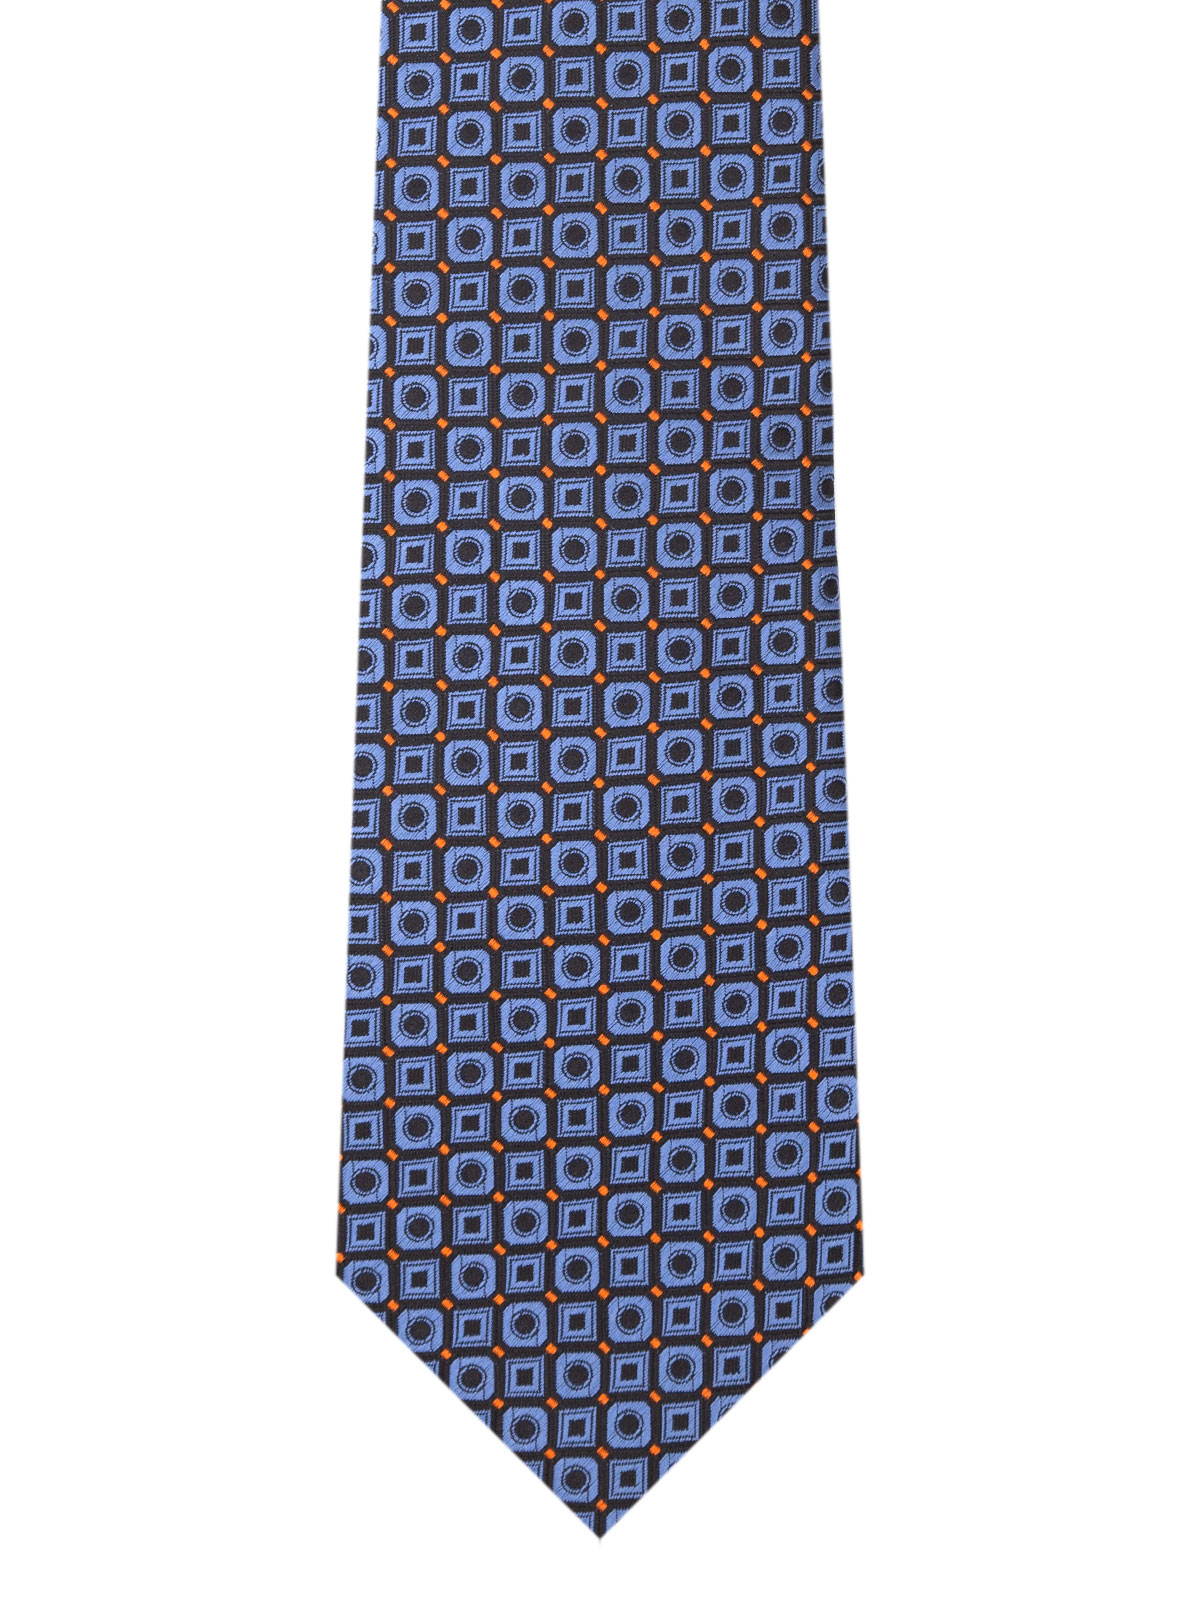 Cravata in negru cu modele albastre - 10166 - € 14.06 img2